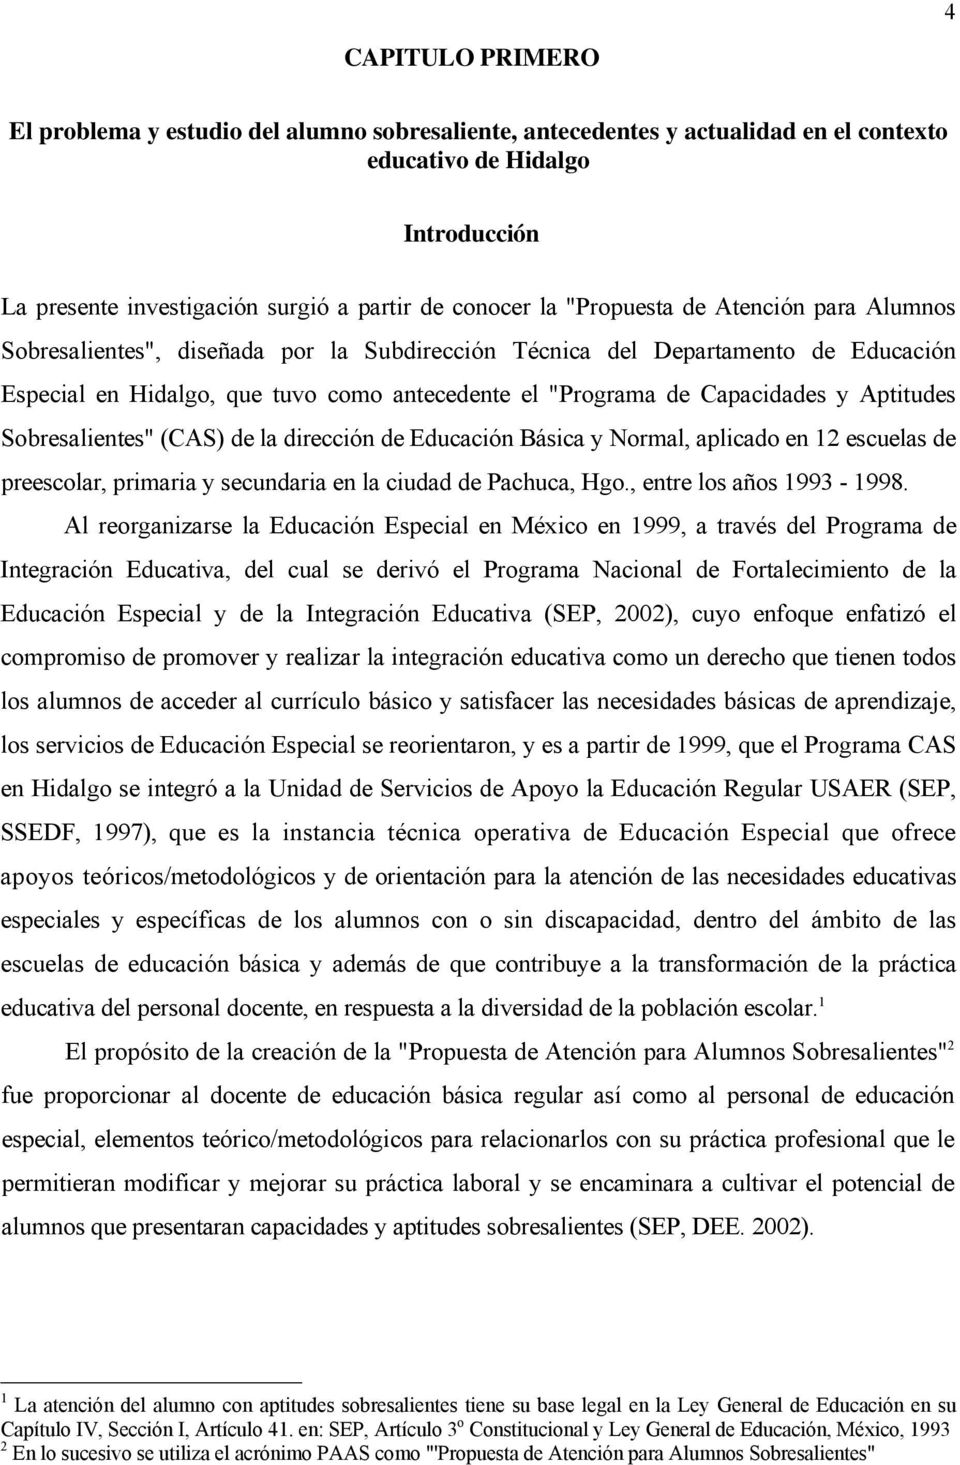 Aptitudes Sobresalientes" (CAS) de la dirección de Educación Básica y Normal, aplicado en 12 escuelas de preescolar, primaria y secundaria en la ciudad de Pachuca, Hgo., entre los años 1993-1998.